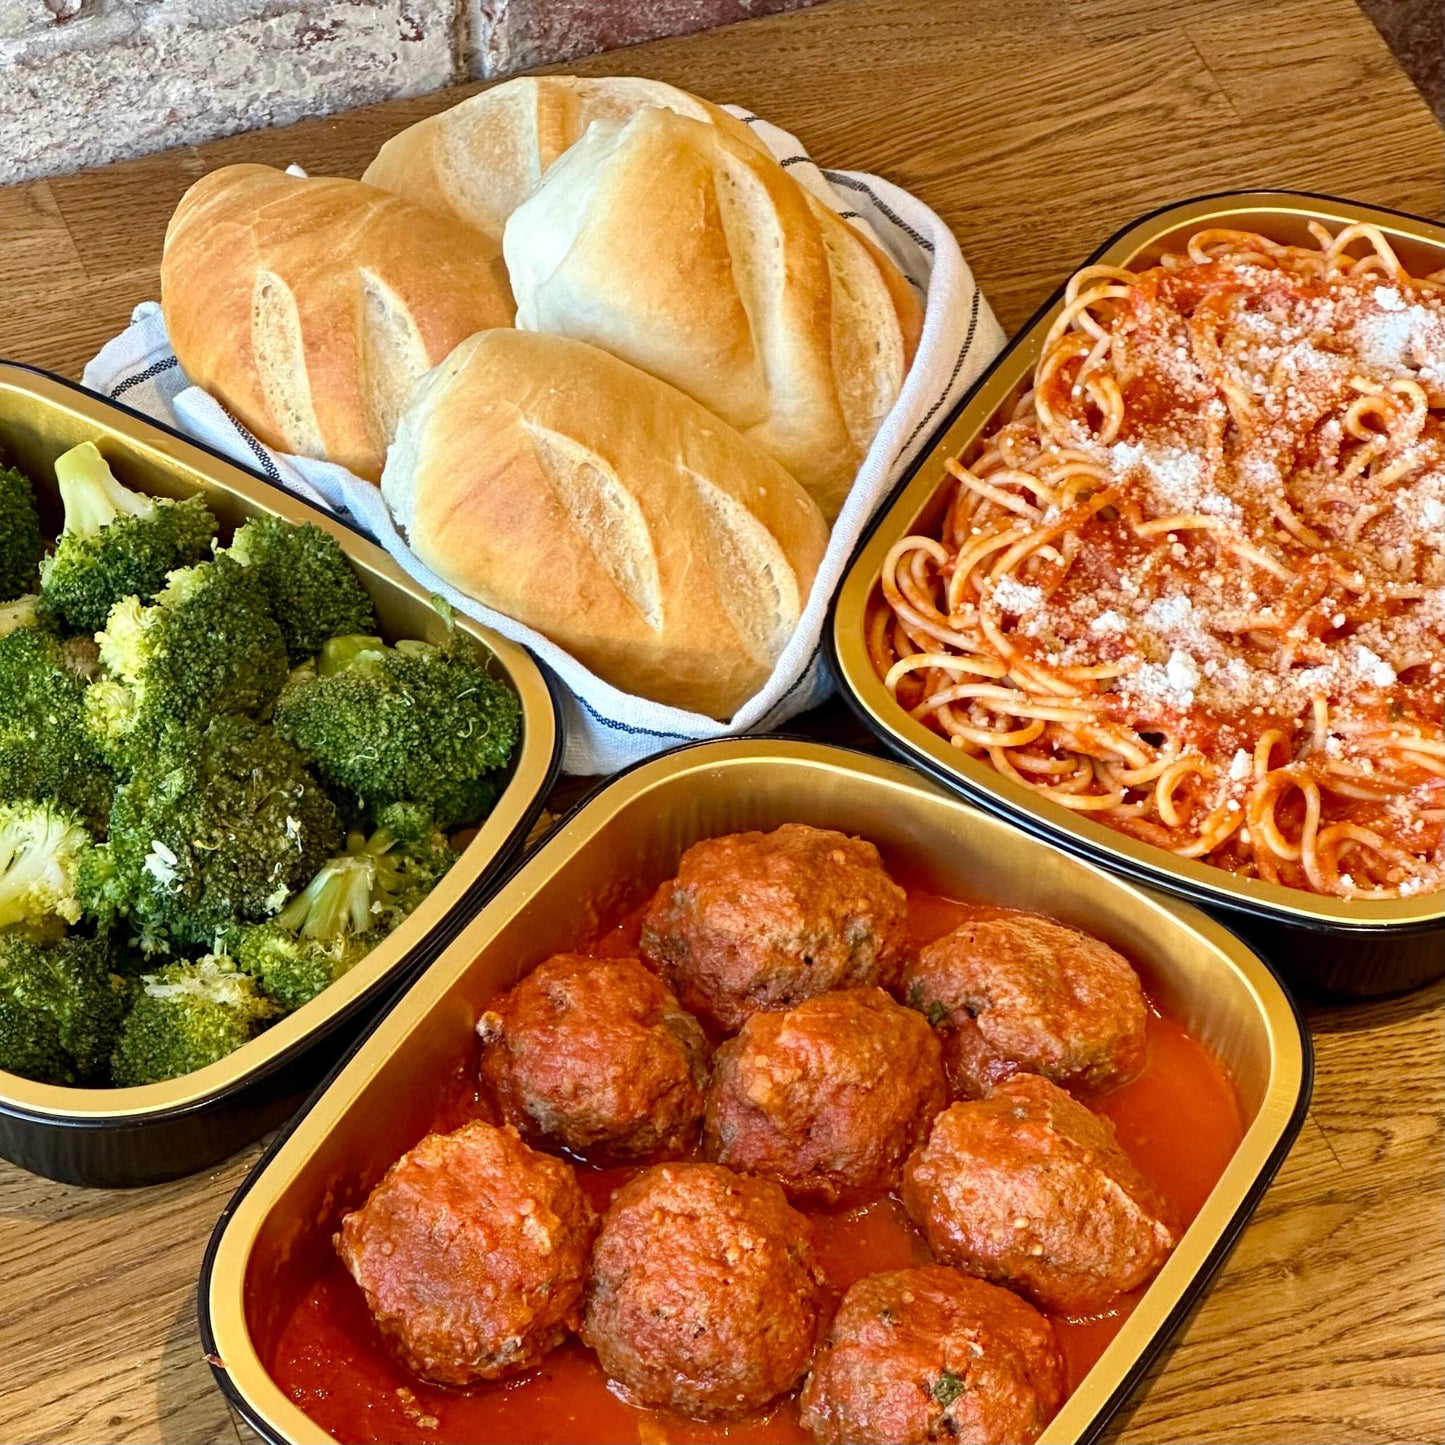 Spaghetti & Meatballs Dinner for 4